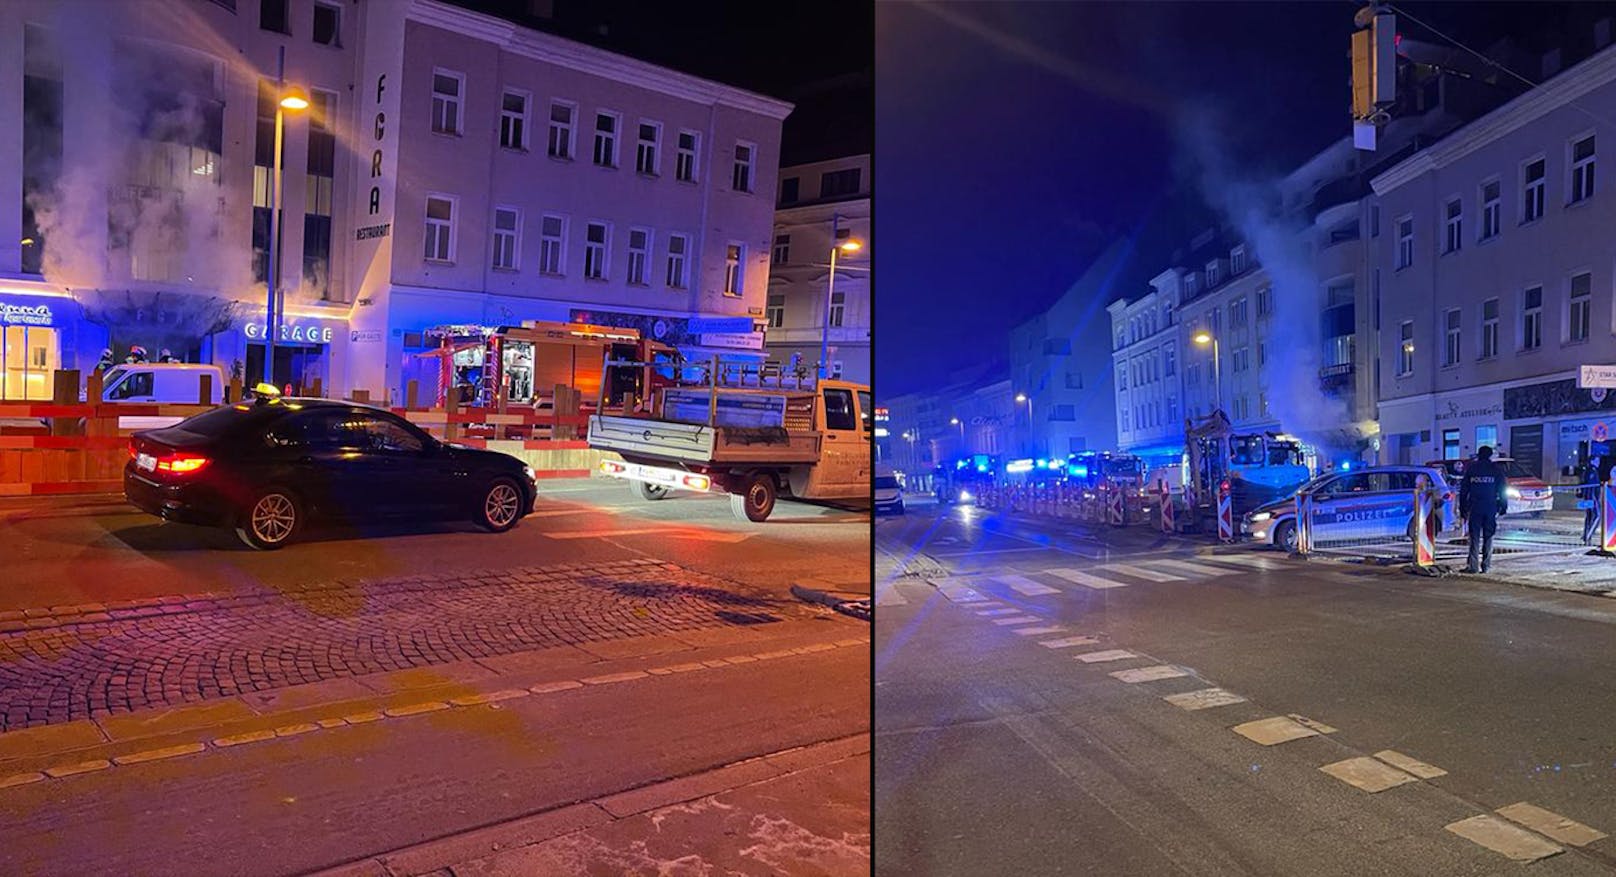 Brand in Wiener Lokal – Polizei vermutet Brandstiftung